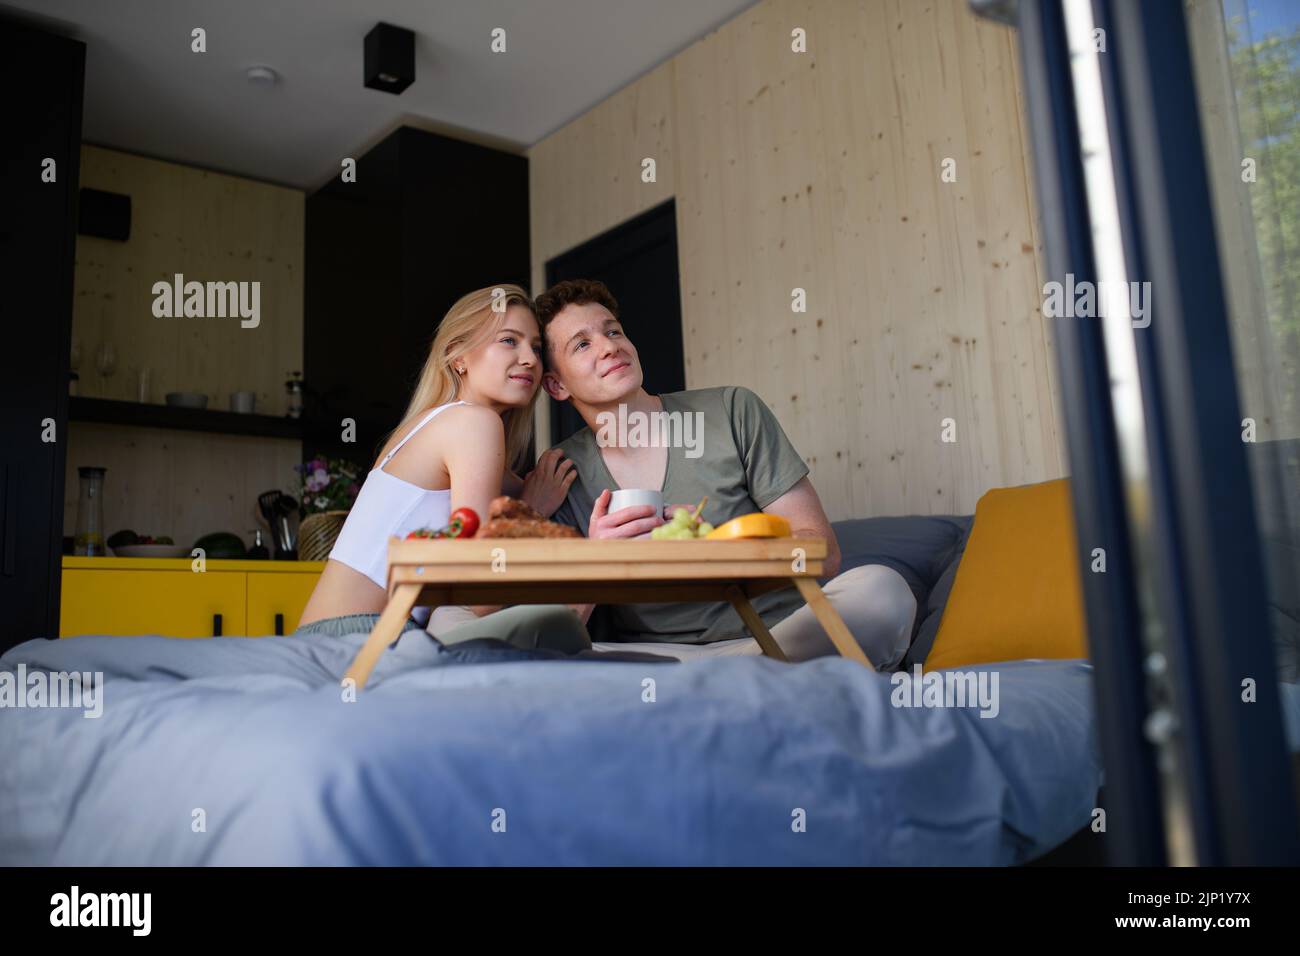 Una pareja joven y hermosa enamorada está sentada en la cama y tomando un desayuno saludable juntos. Foto de stock